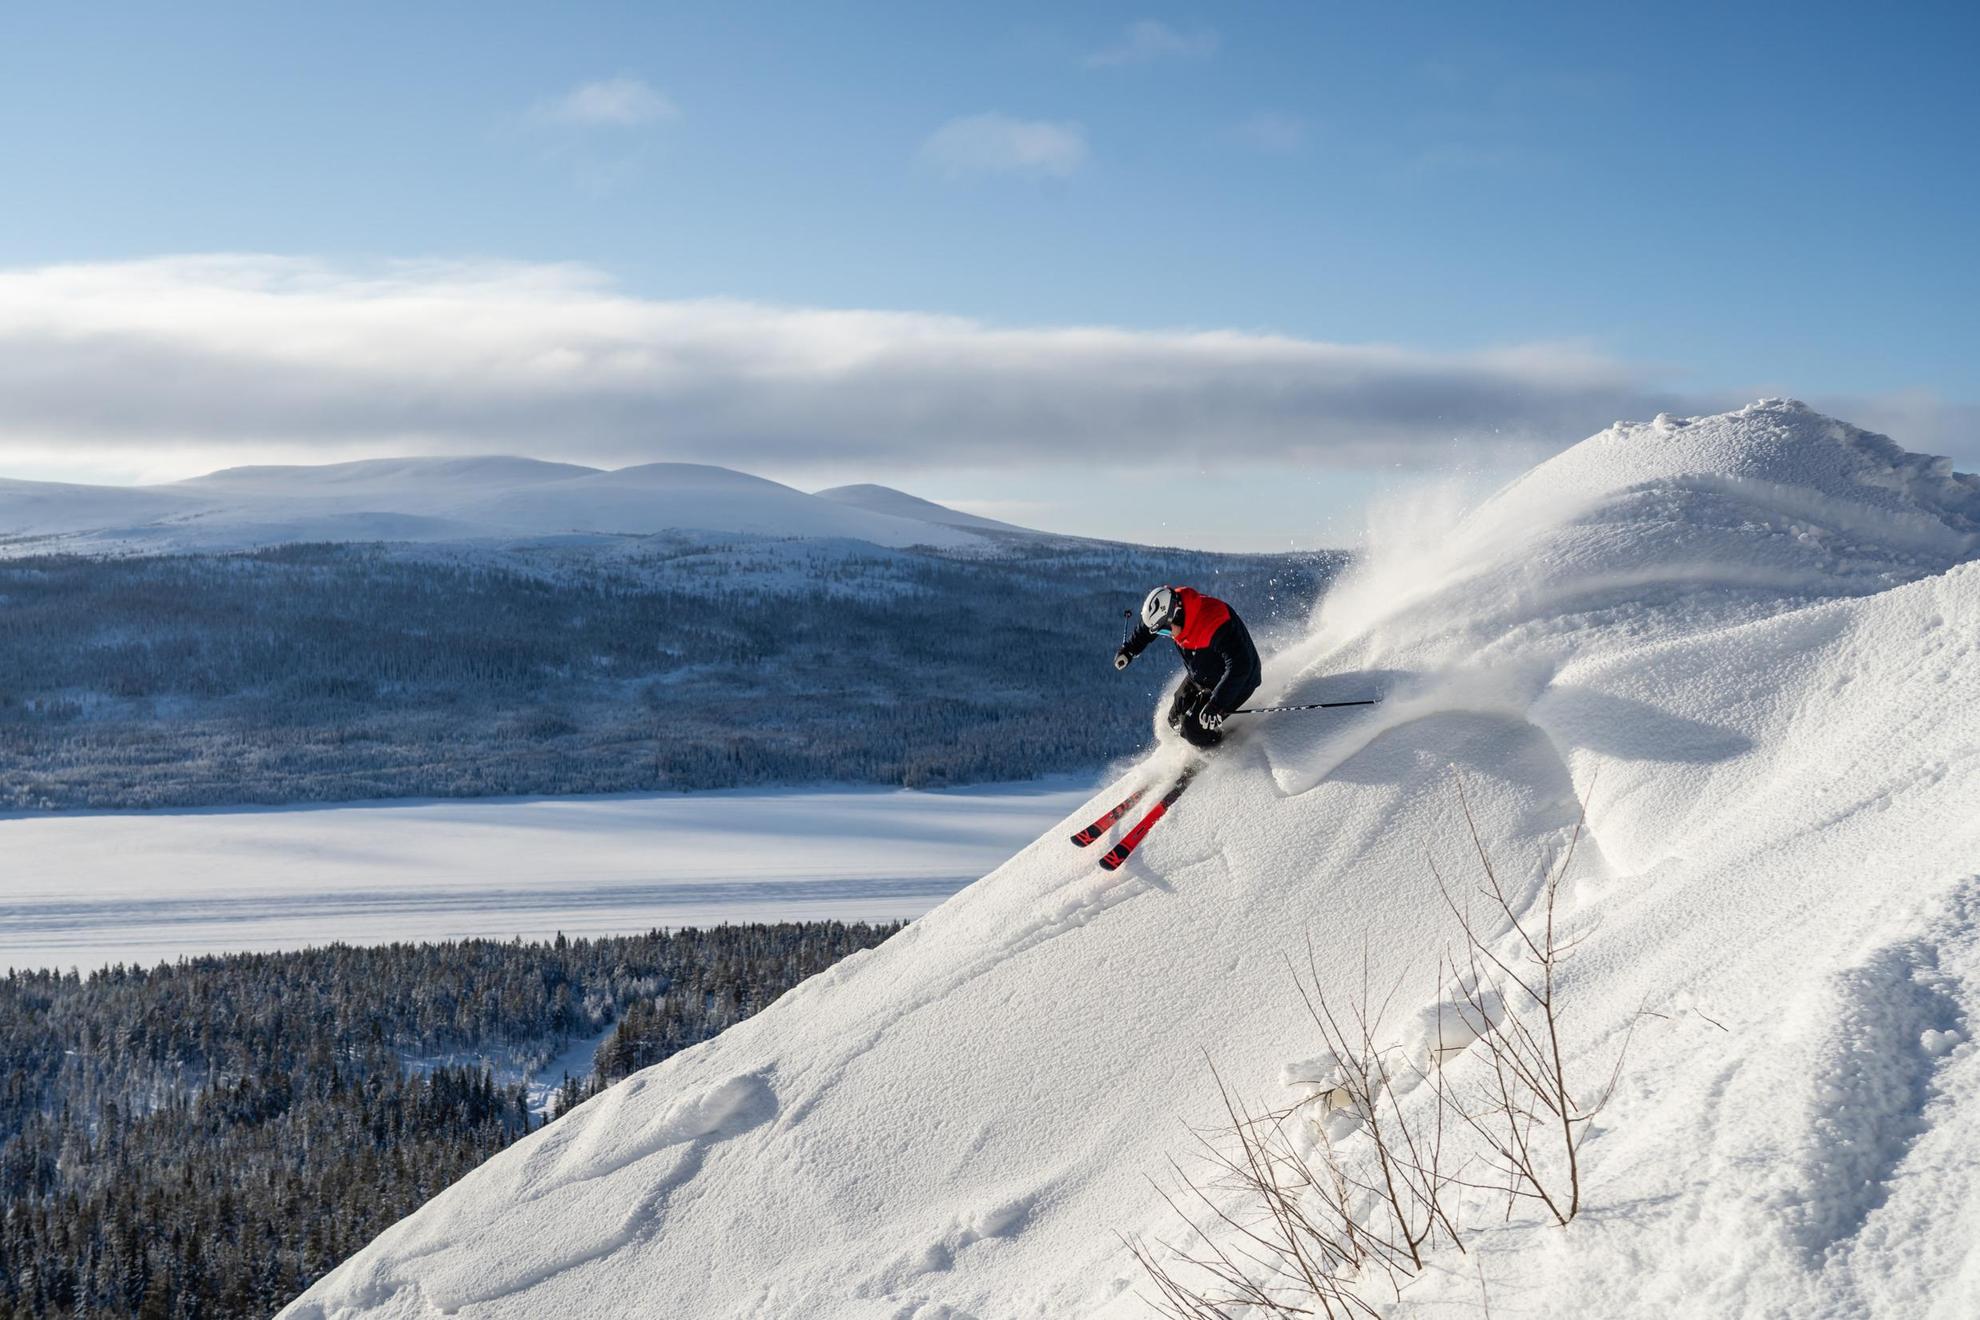 Une personne skiant sur la montagne avec une vue sur un paysage enneigé en arrière-plan.